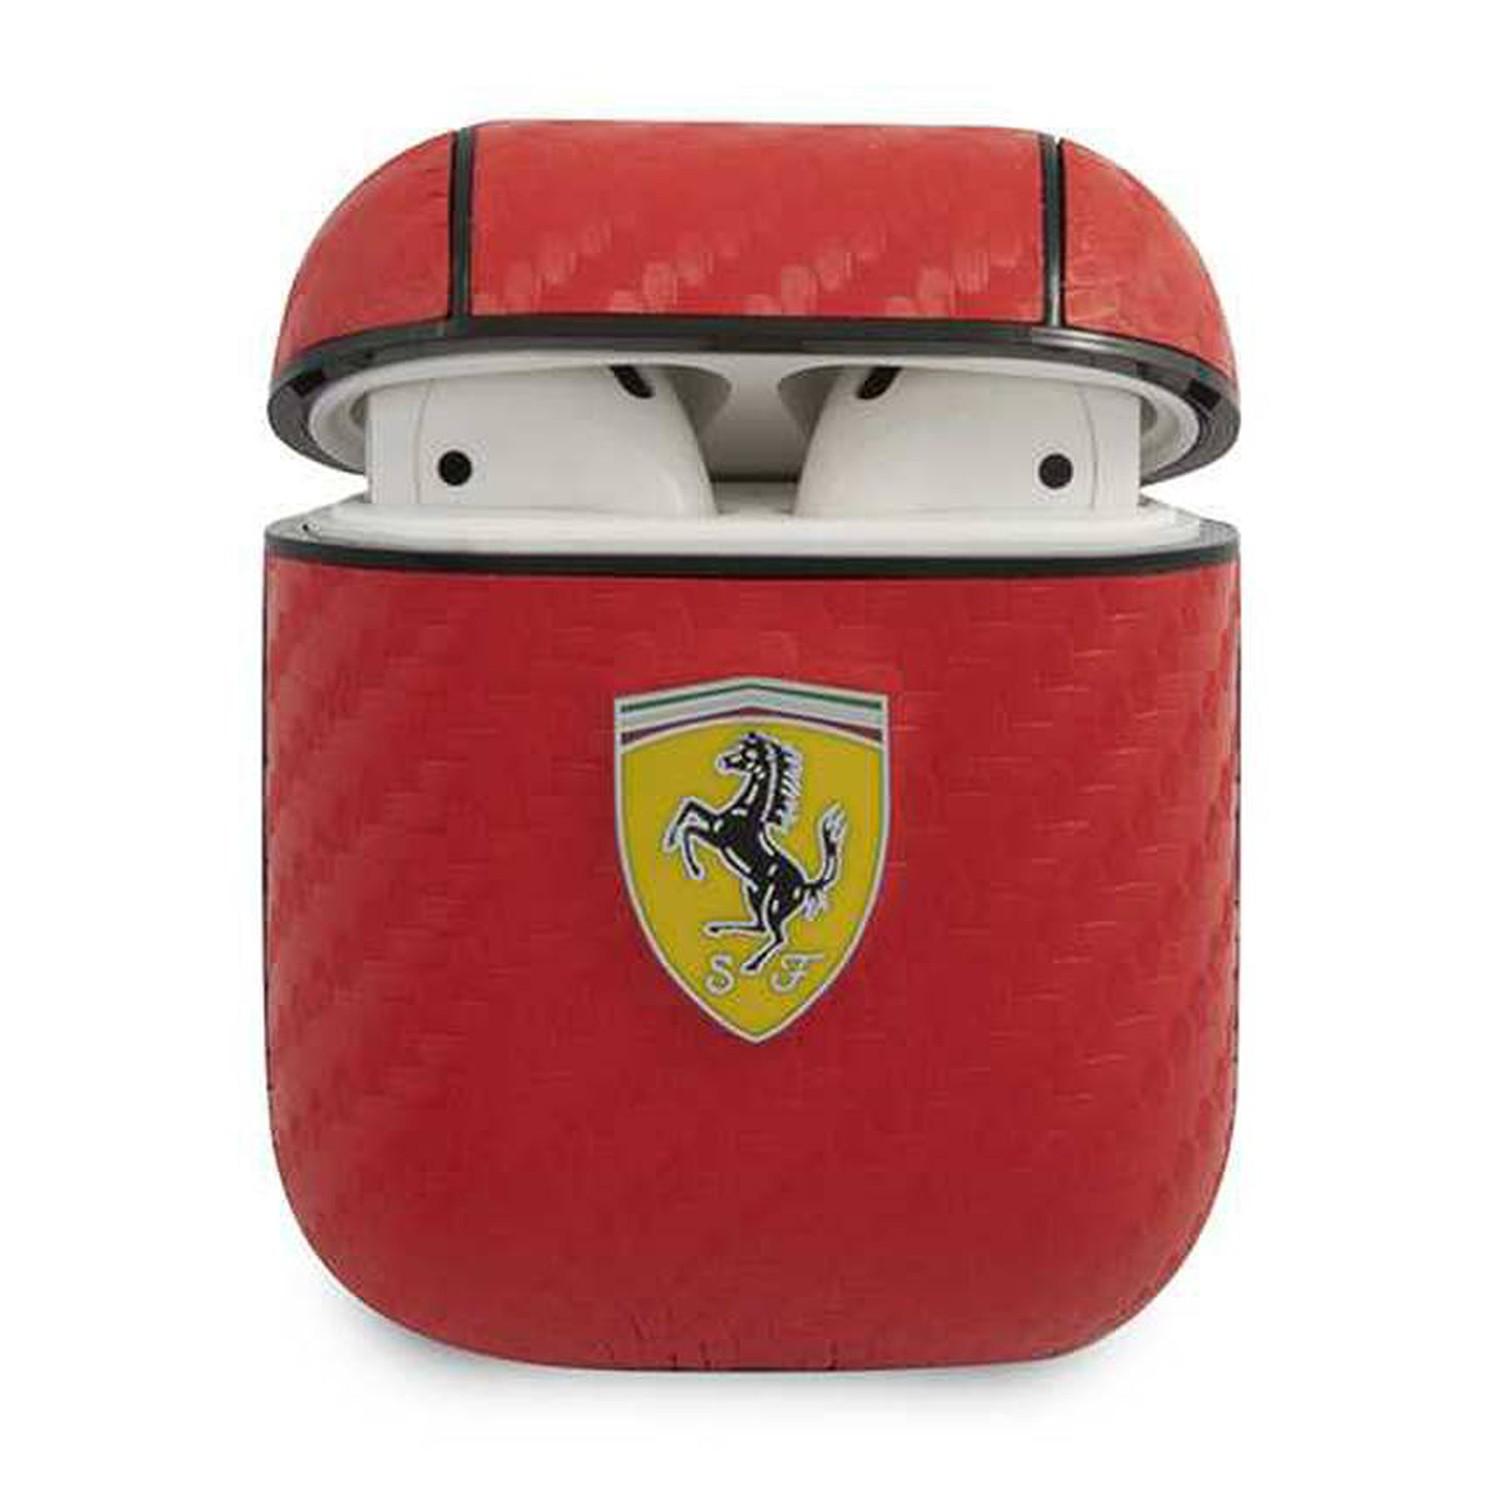 كفر سماعة بلوتوث ايربودز 1/2 جلد فيراري أحمر Ferrari PC Leather Case With Yellow Shield Metal Logo - cG9zdDoxMzY3MDc3